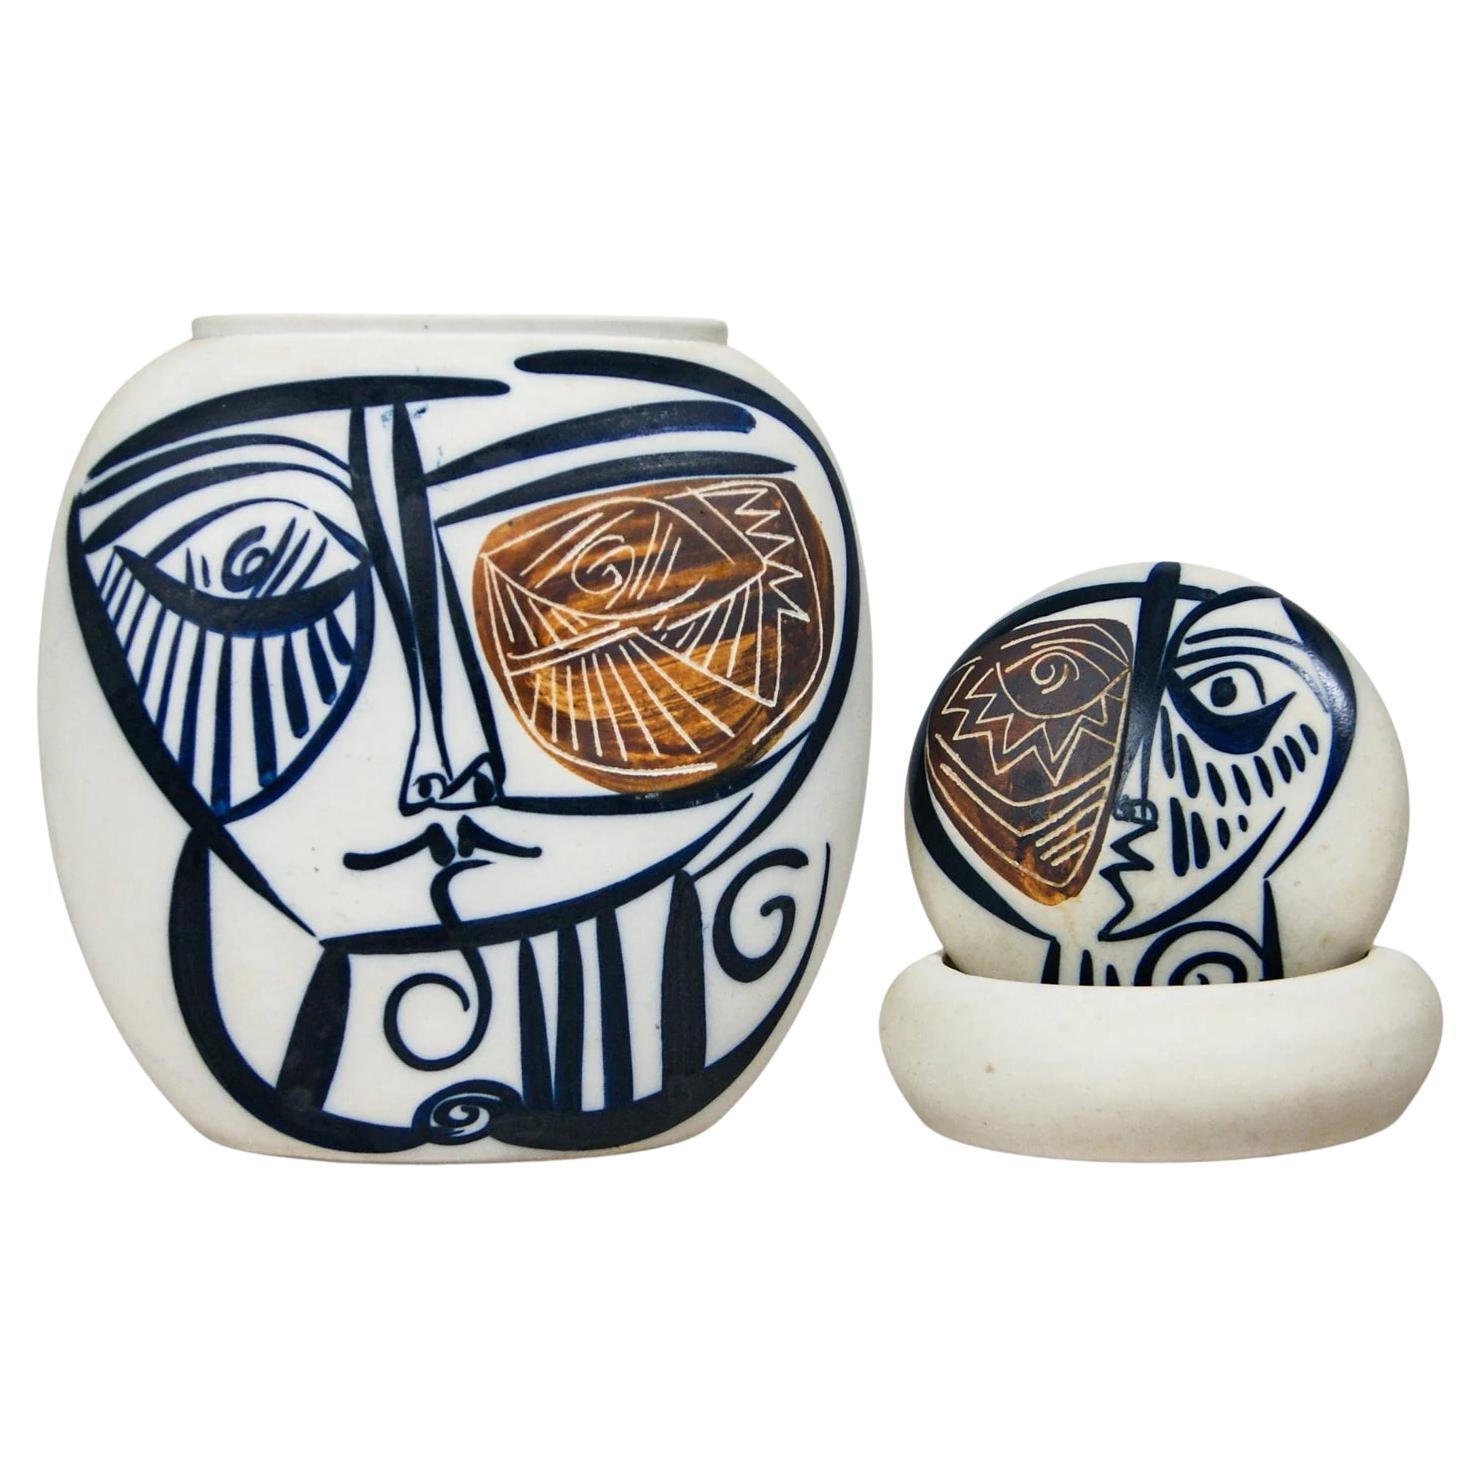 Spanische Vintage-Vase aus Porzellan und passende Schale mit handbemalten kubistischen Gesichtern